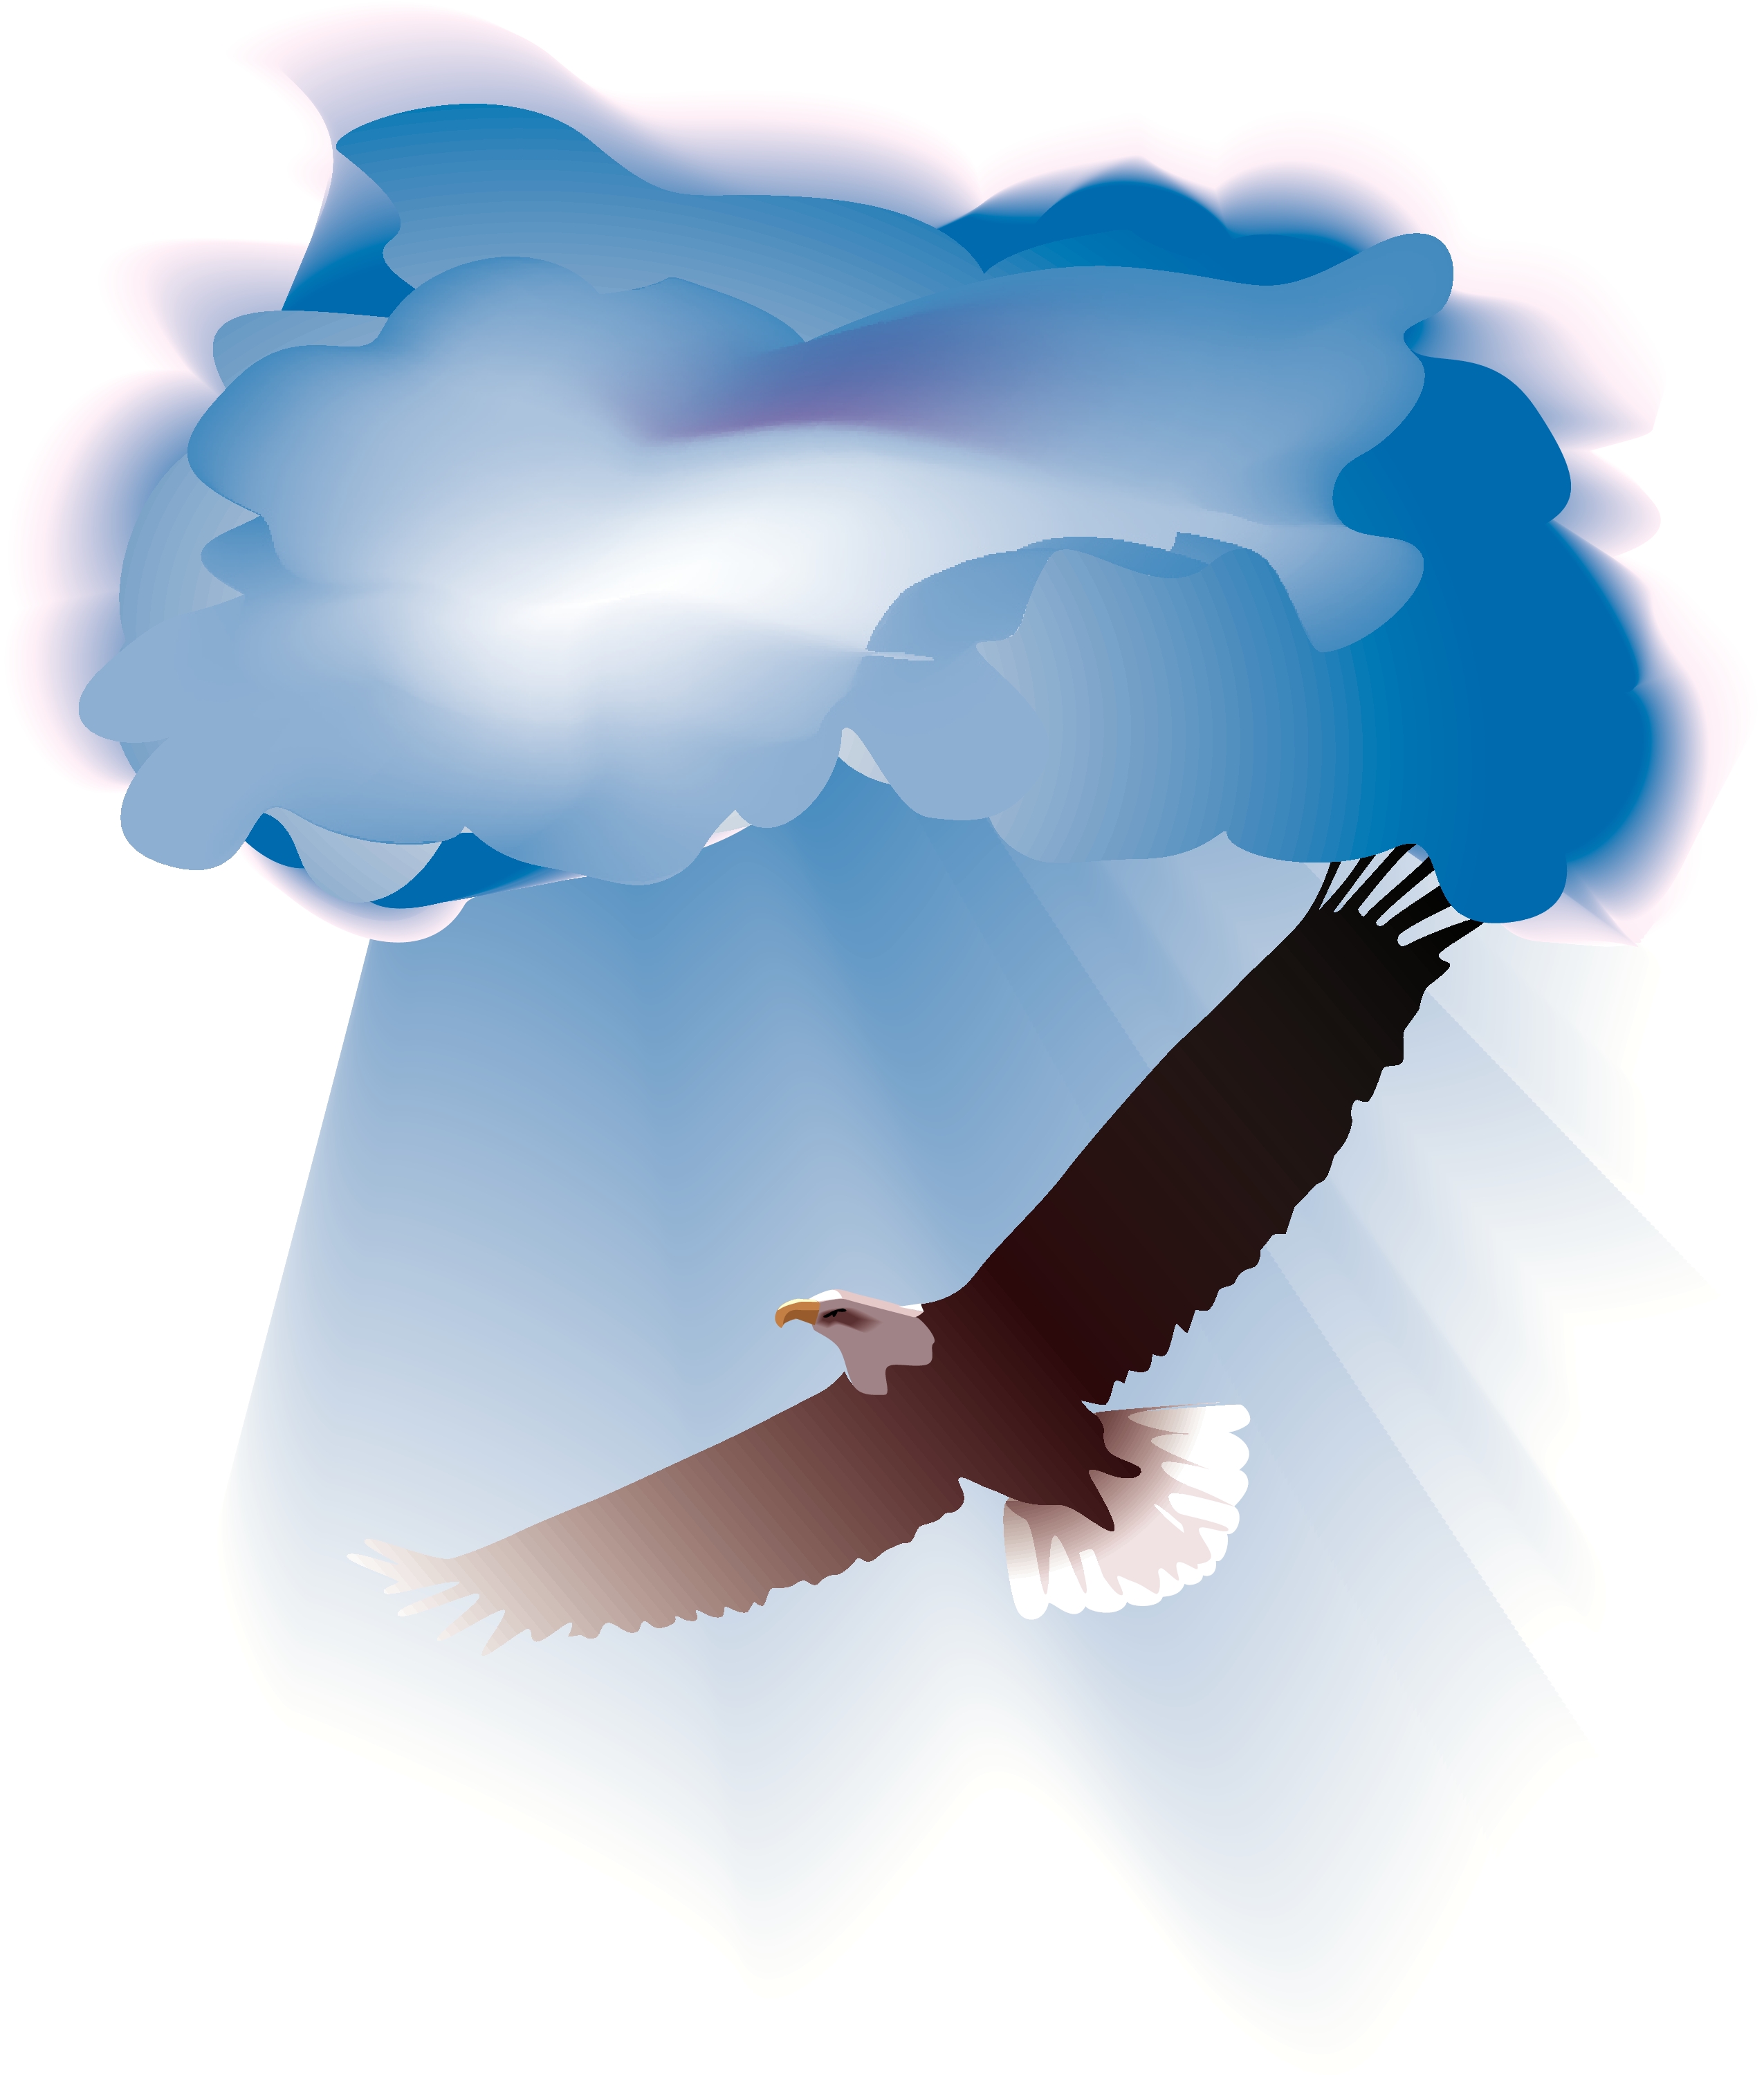 christian clip art eagle - photo #25